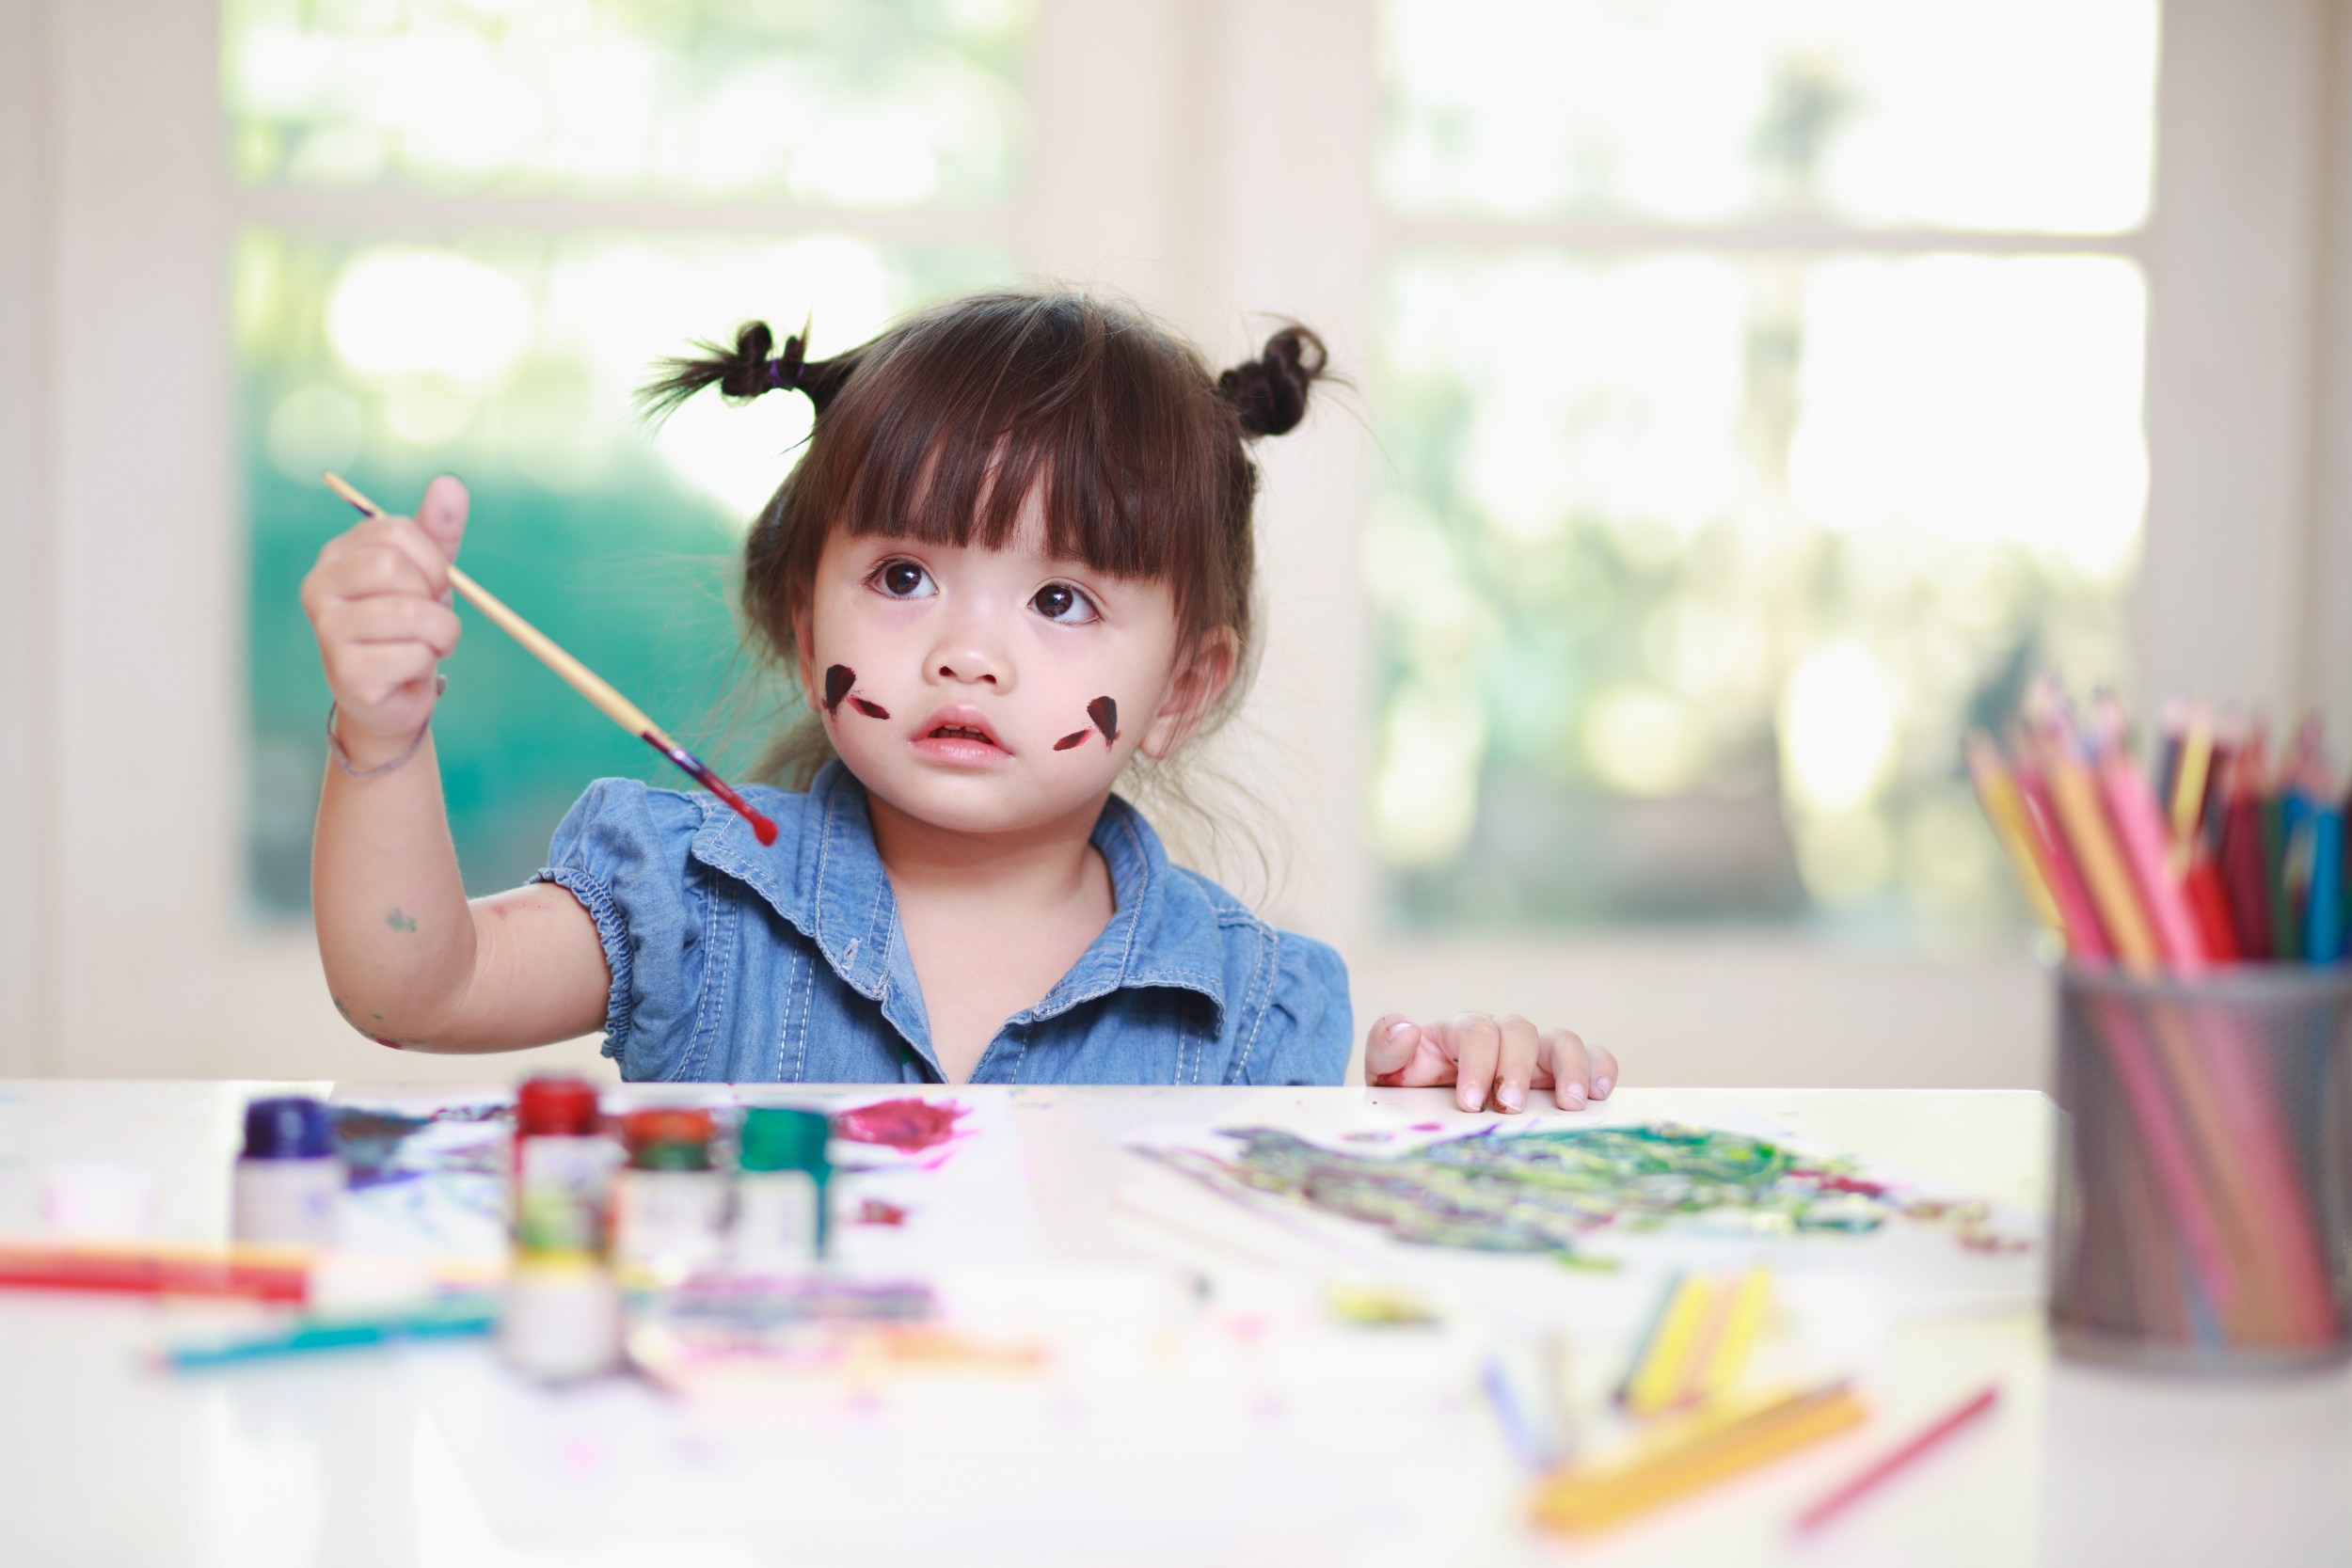 Kursus menggambar juga bisa menjadi pilihan untuk anak yang suka berkreasi.